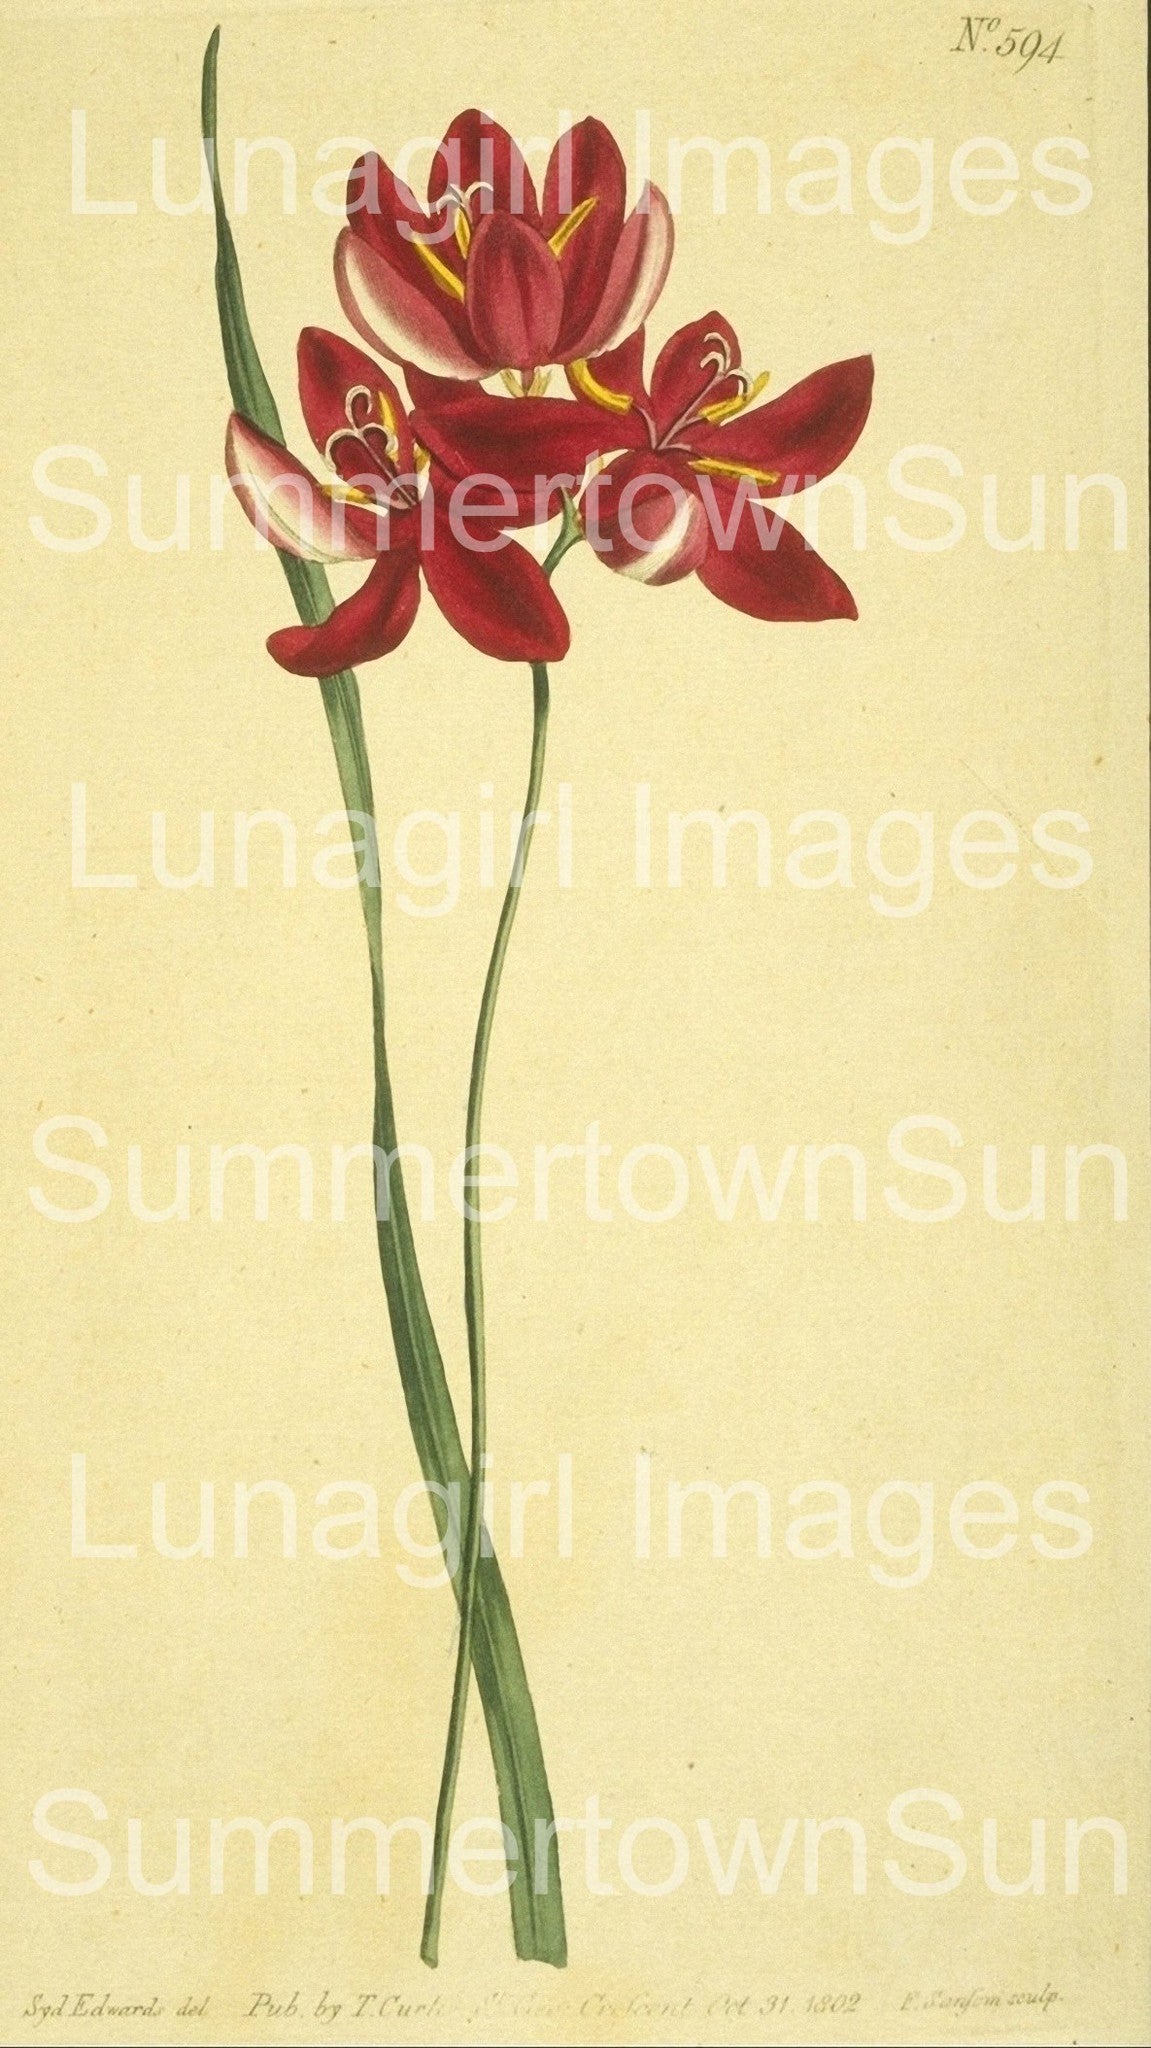 Curtis Botanical Prints: 60 images - Lunagirl